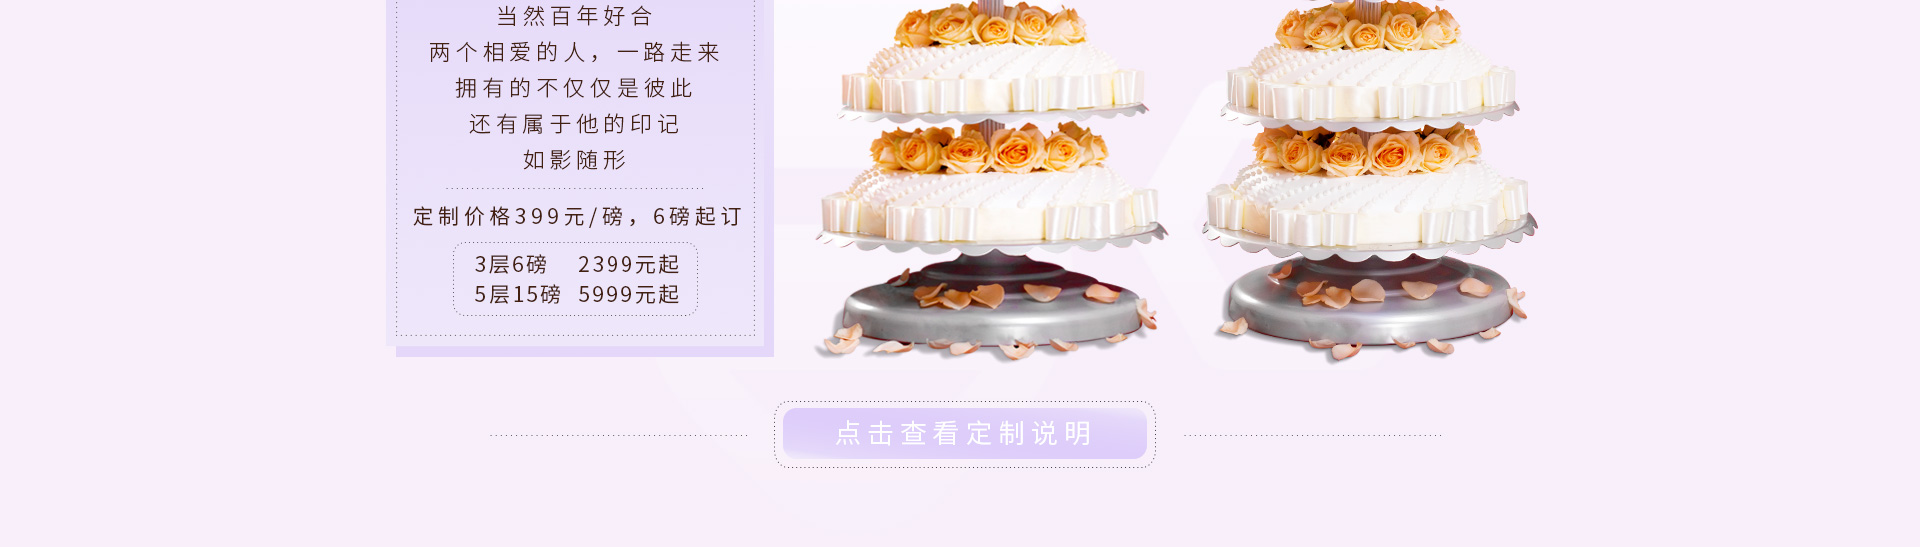 婚礼蛋糕定制 百年好合 ebeecake小蜜蜂蛋糕